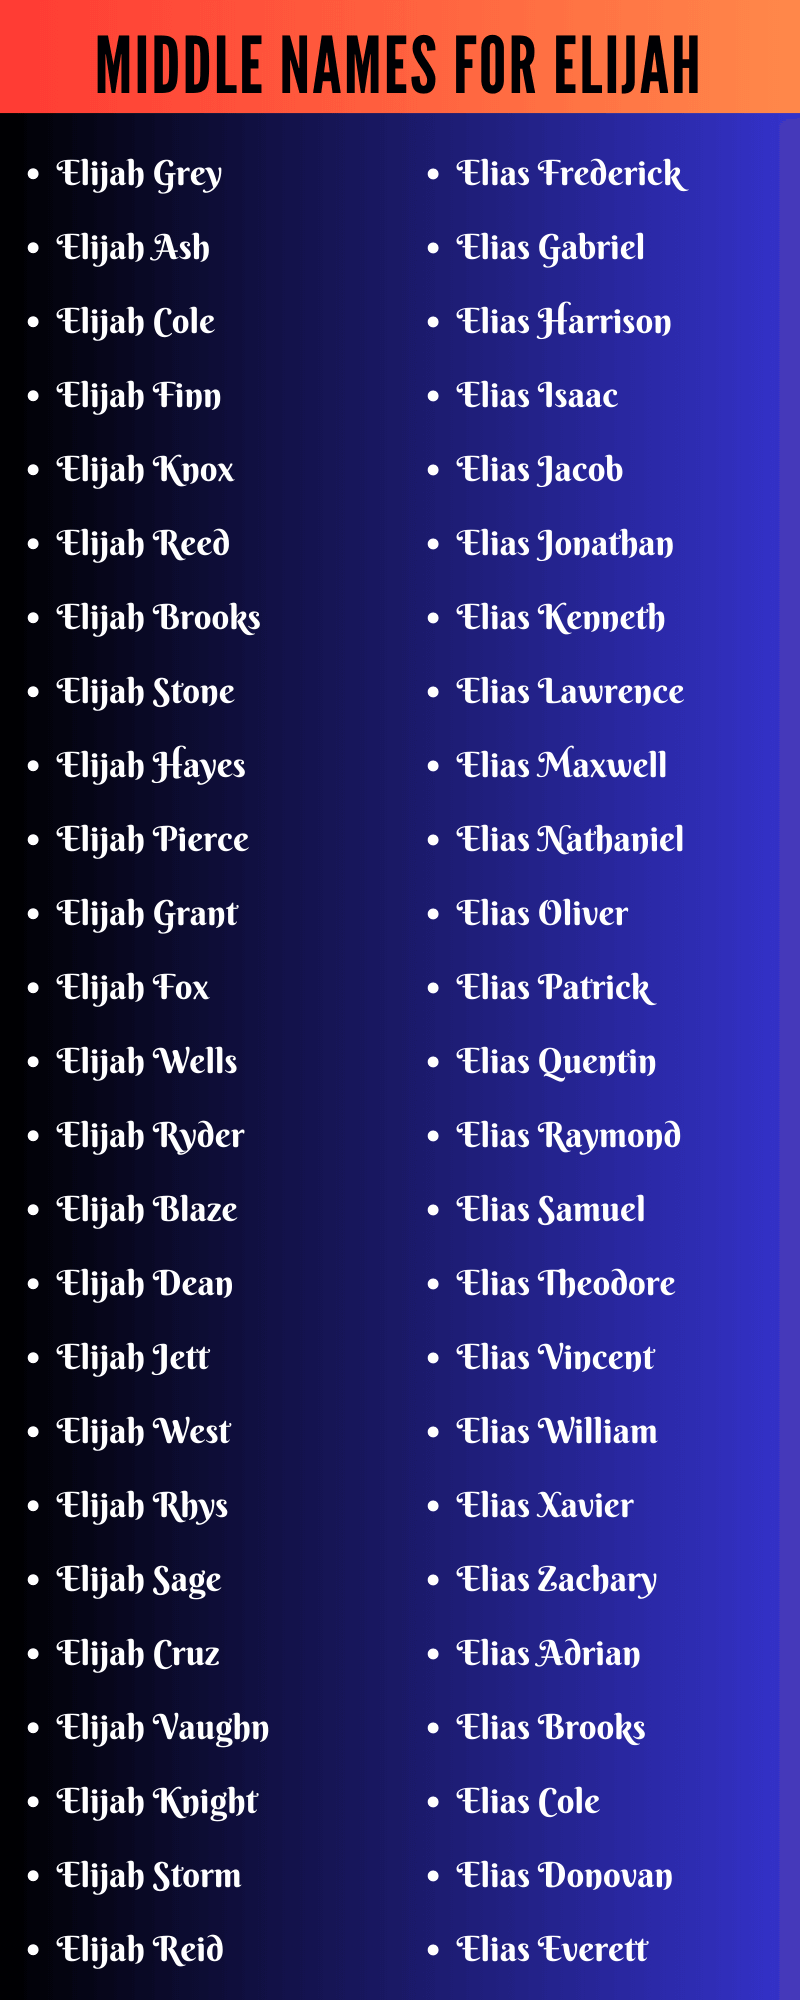 Middle Names For Elijah